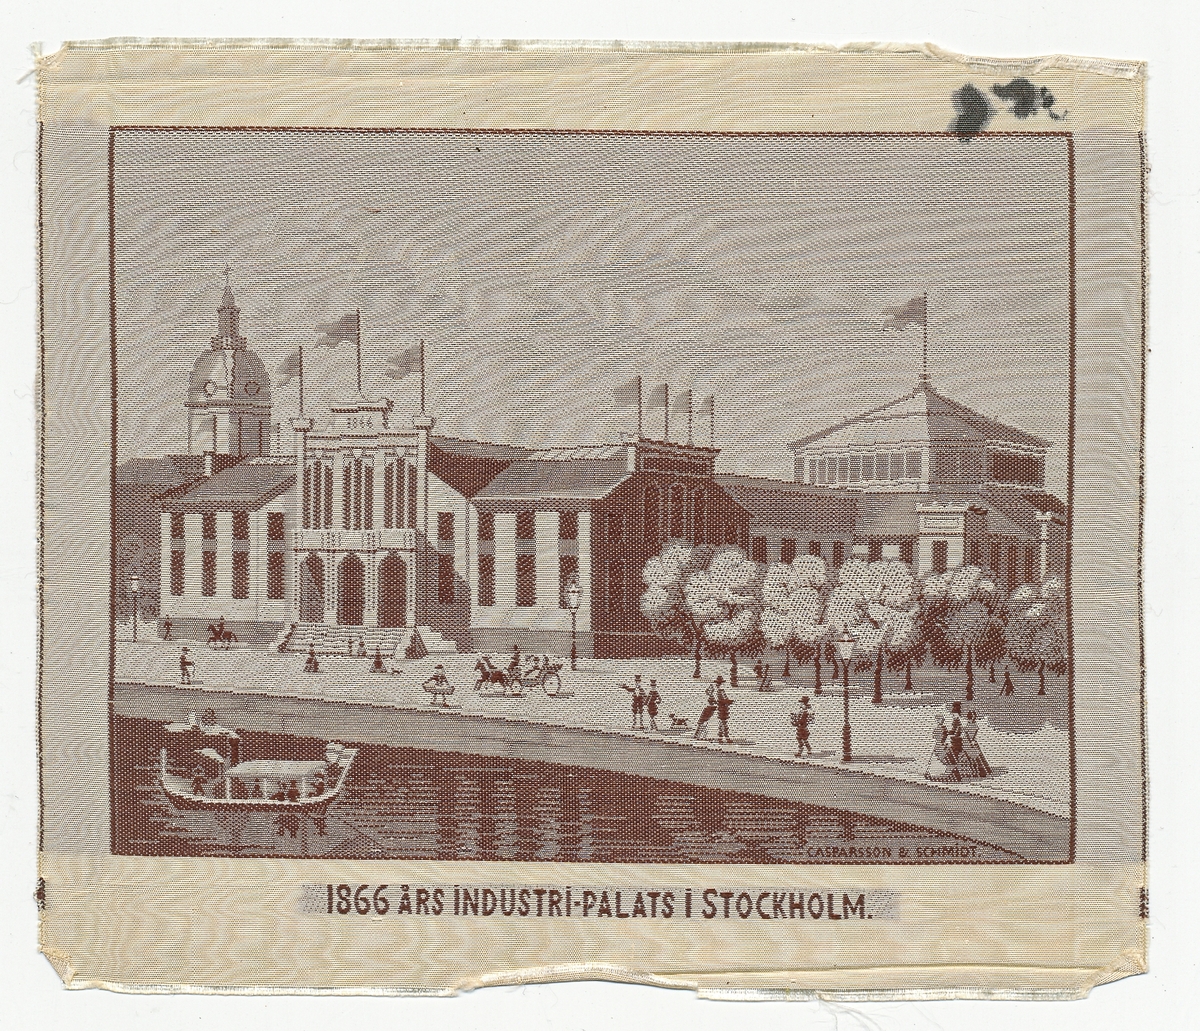 Prov på vävning i papperskuvert. Utsikg 1866 års industripalats Stockholm. Vävd i siden vid Casparsson & Schmidt.